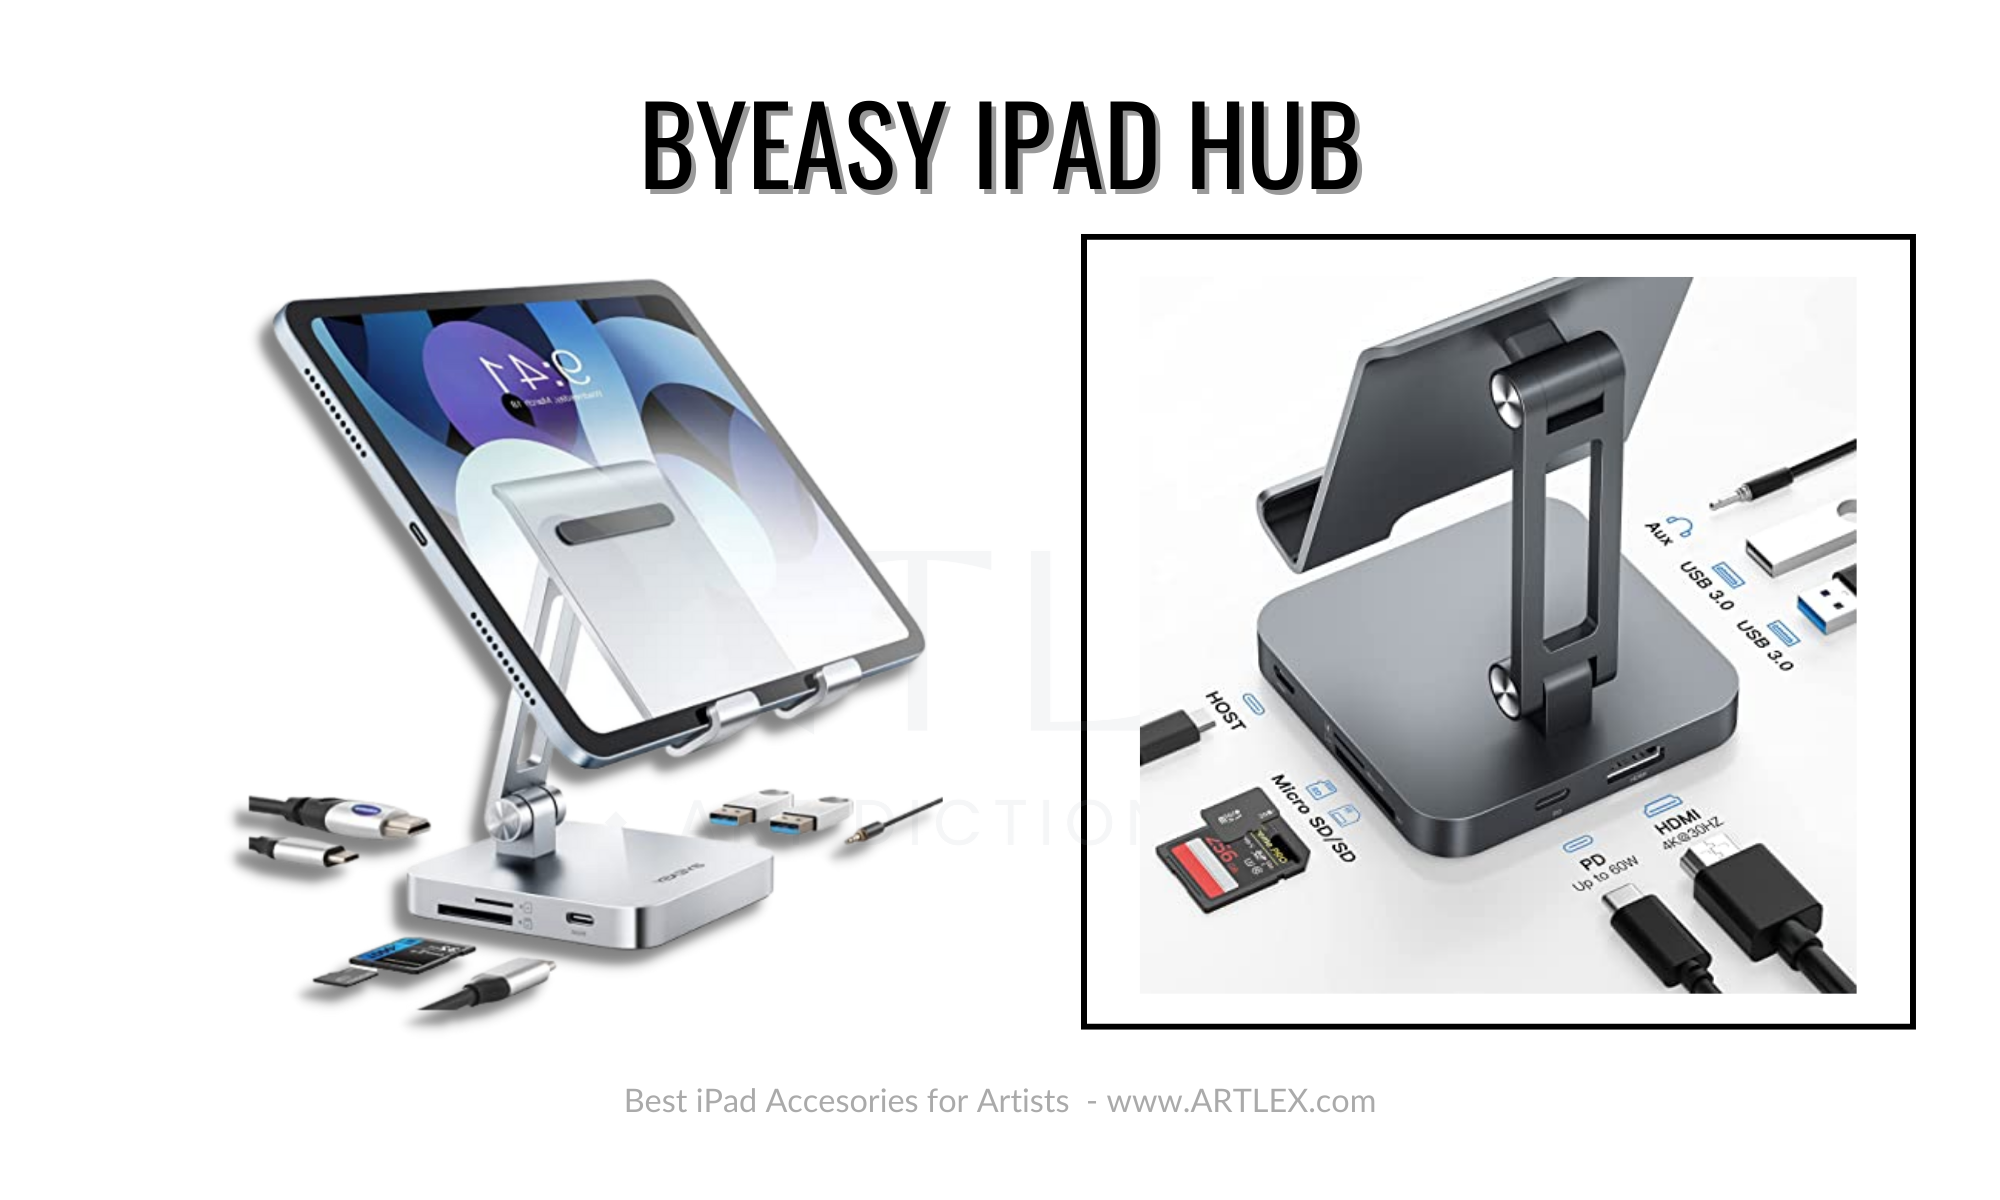 Meilleur hub de base - BYEASY iPad Hub